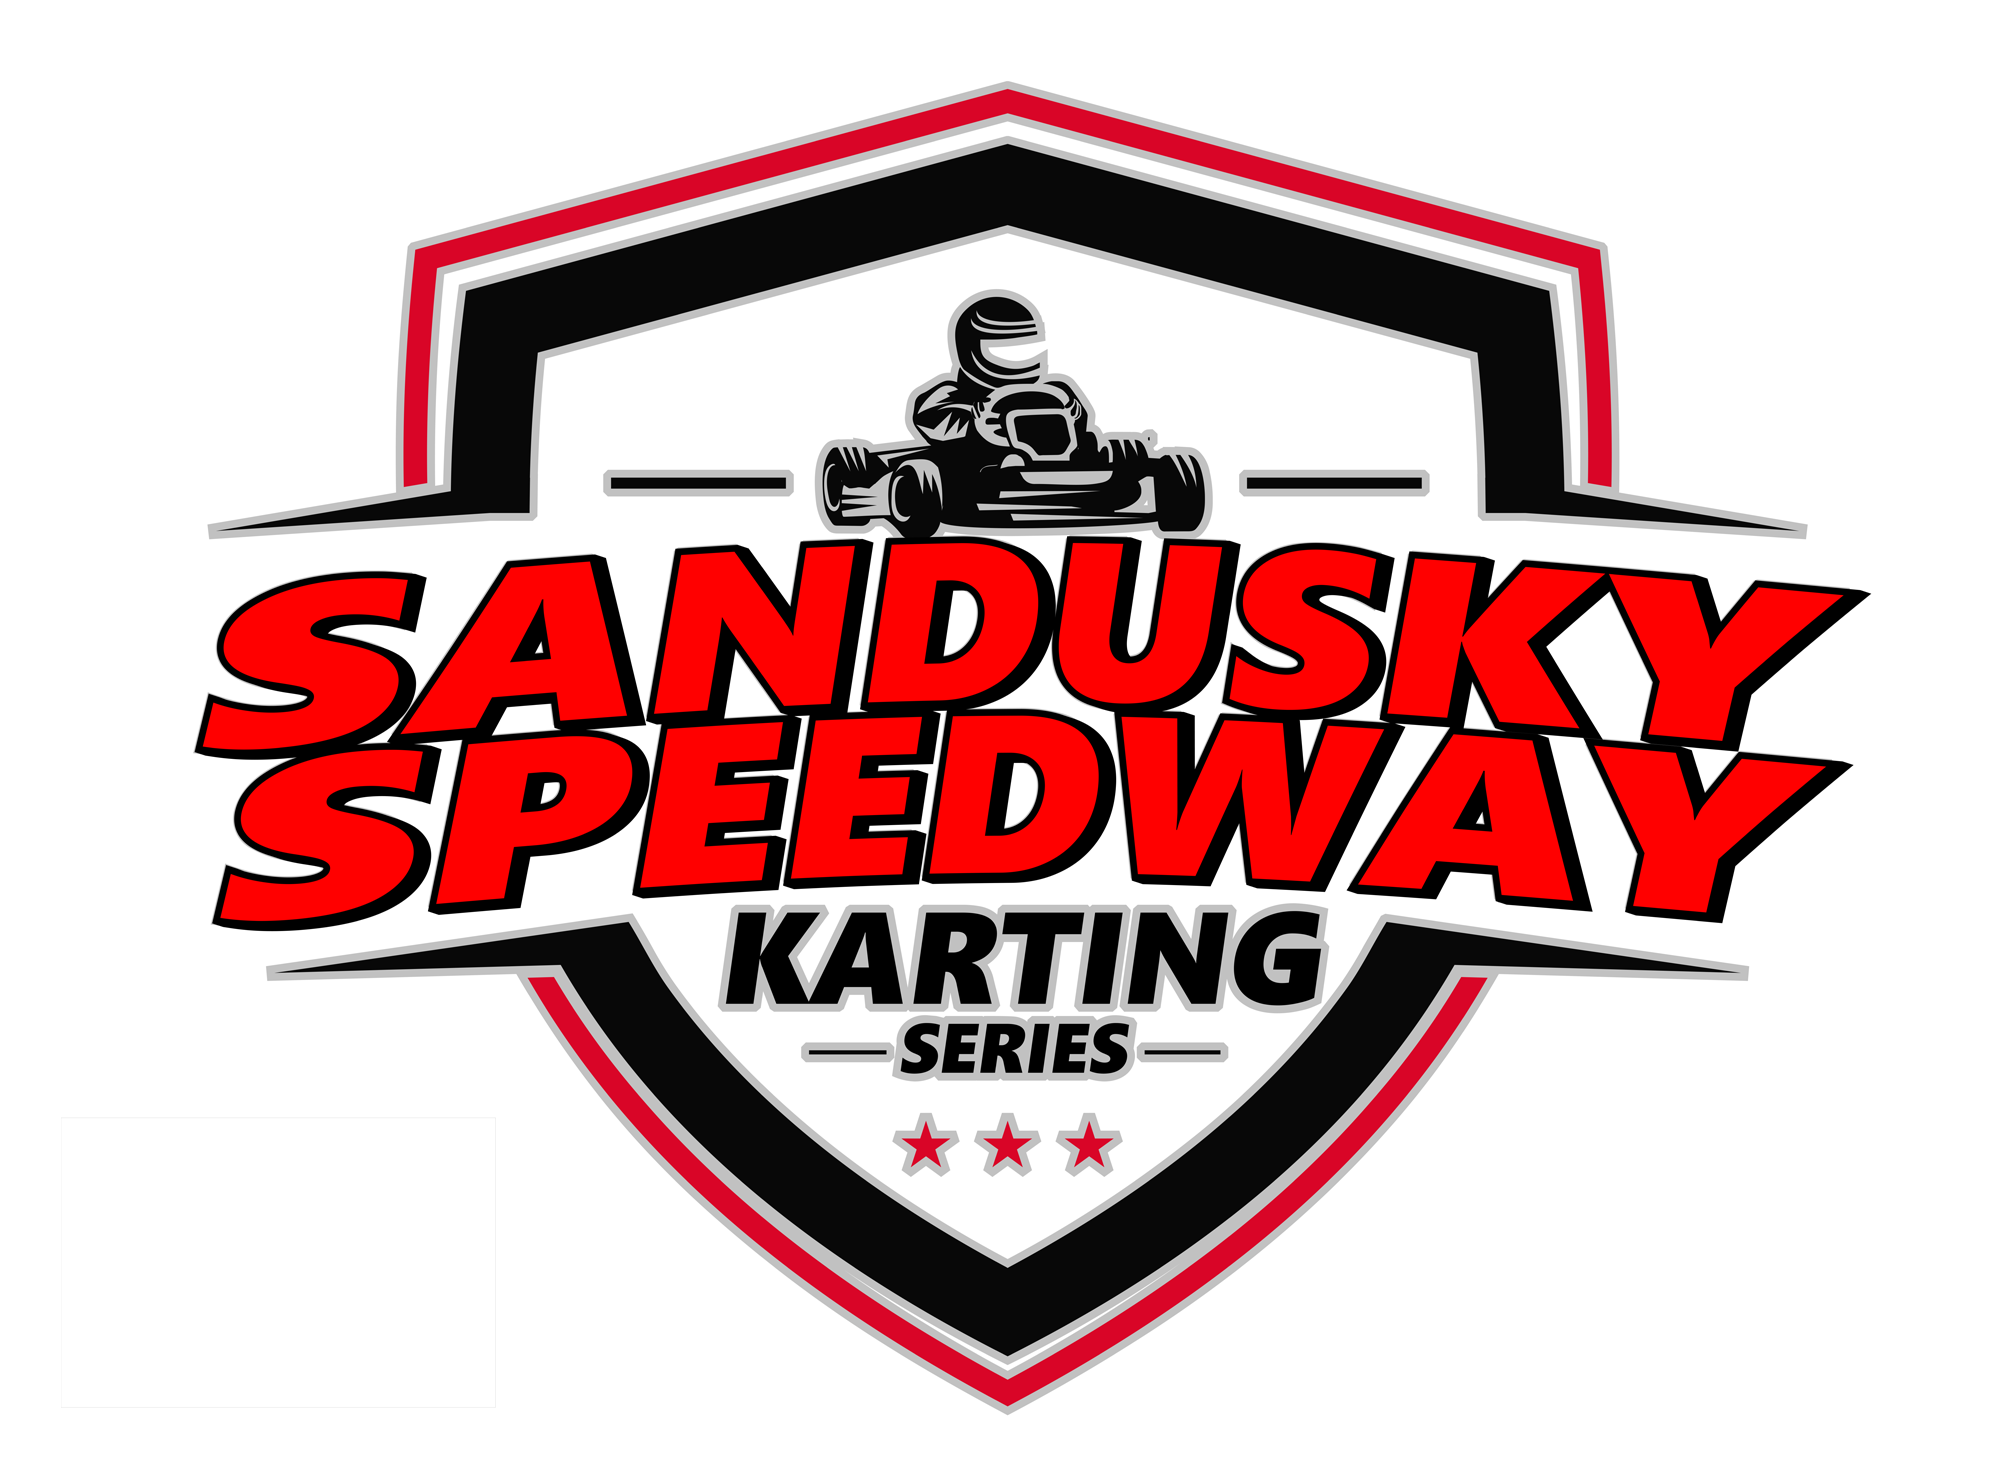 Sandusky speedway schedule